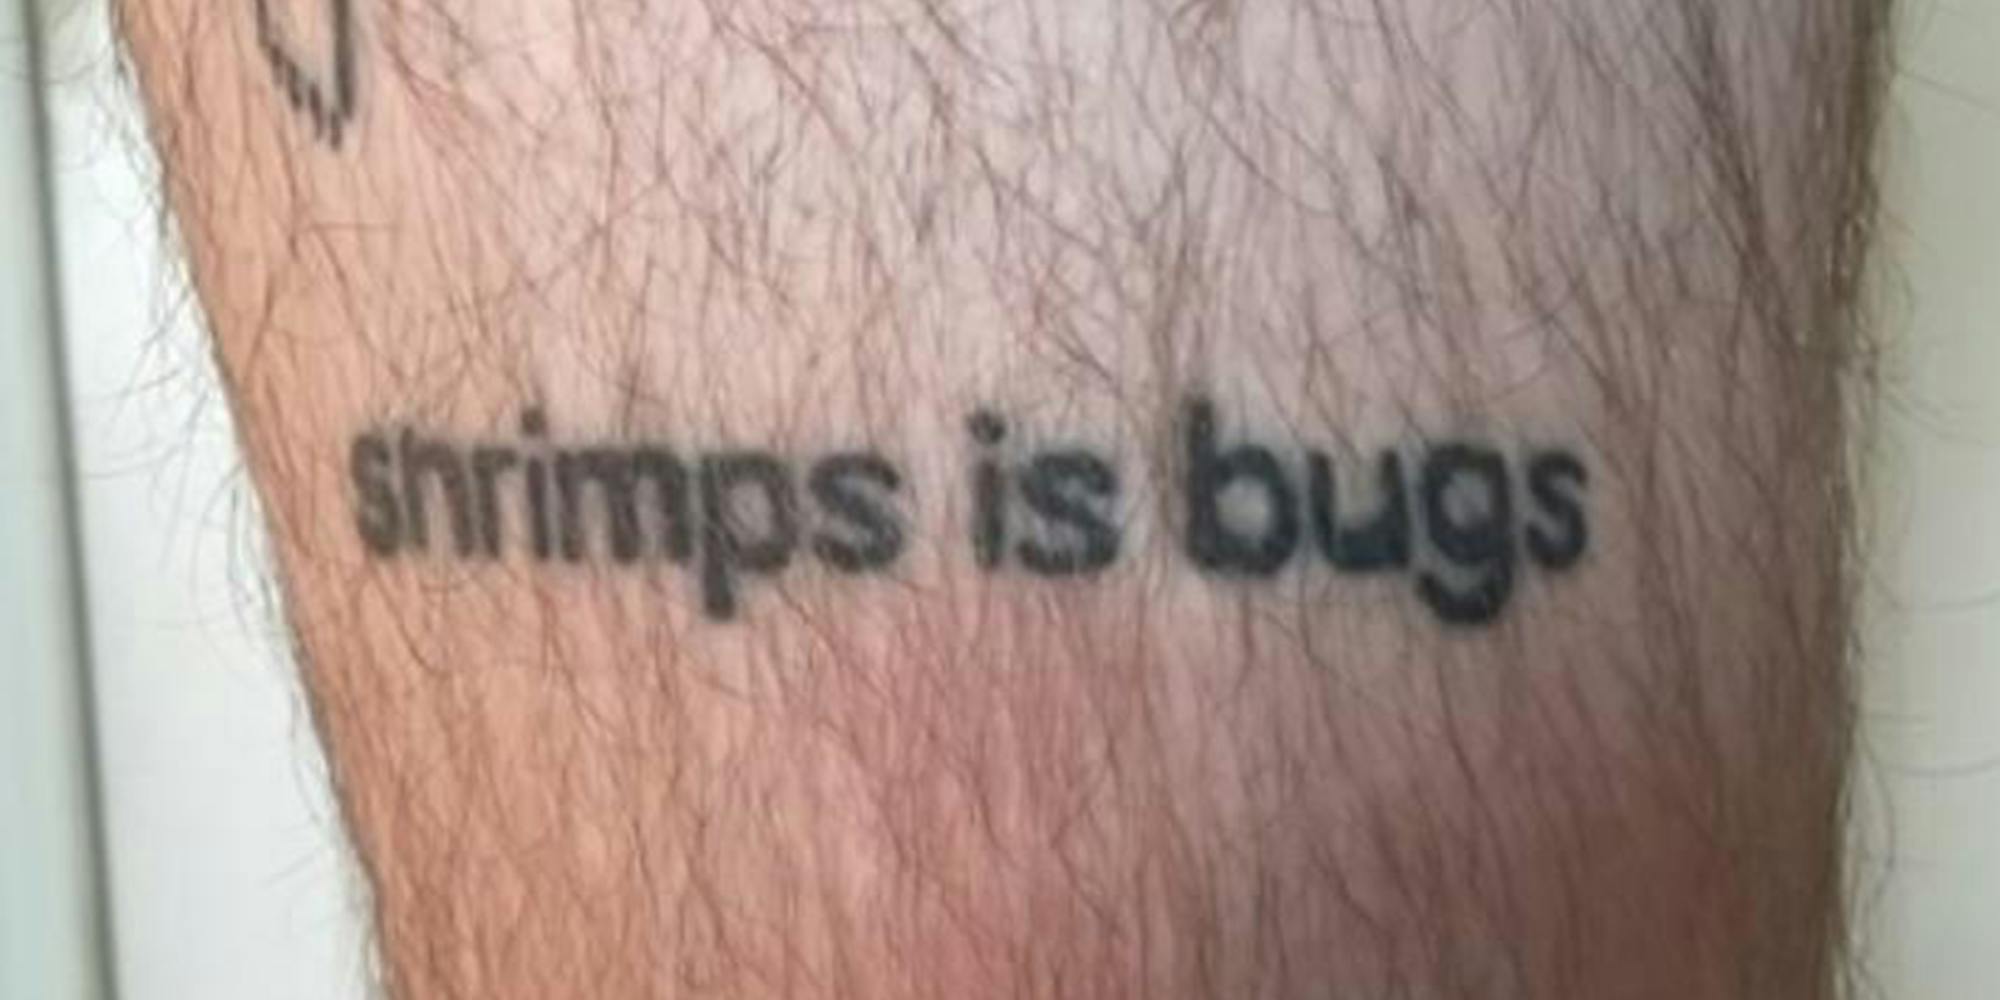 shrimps is bugs tattoo on leg